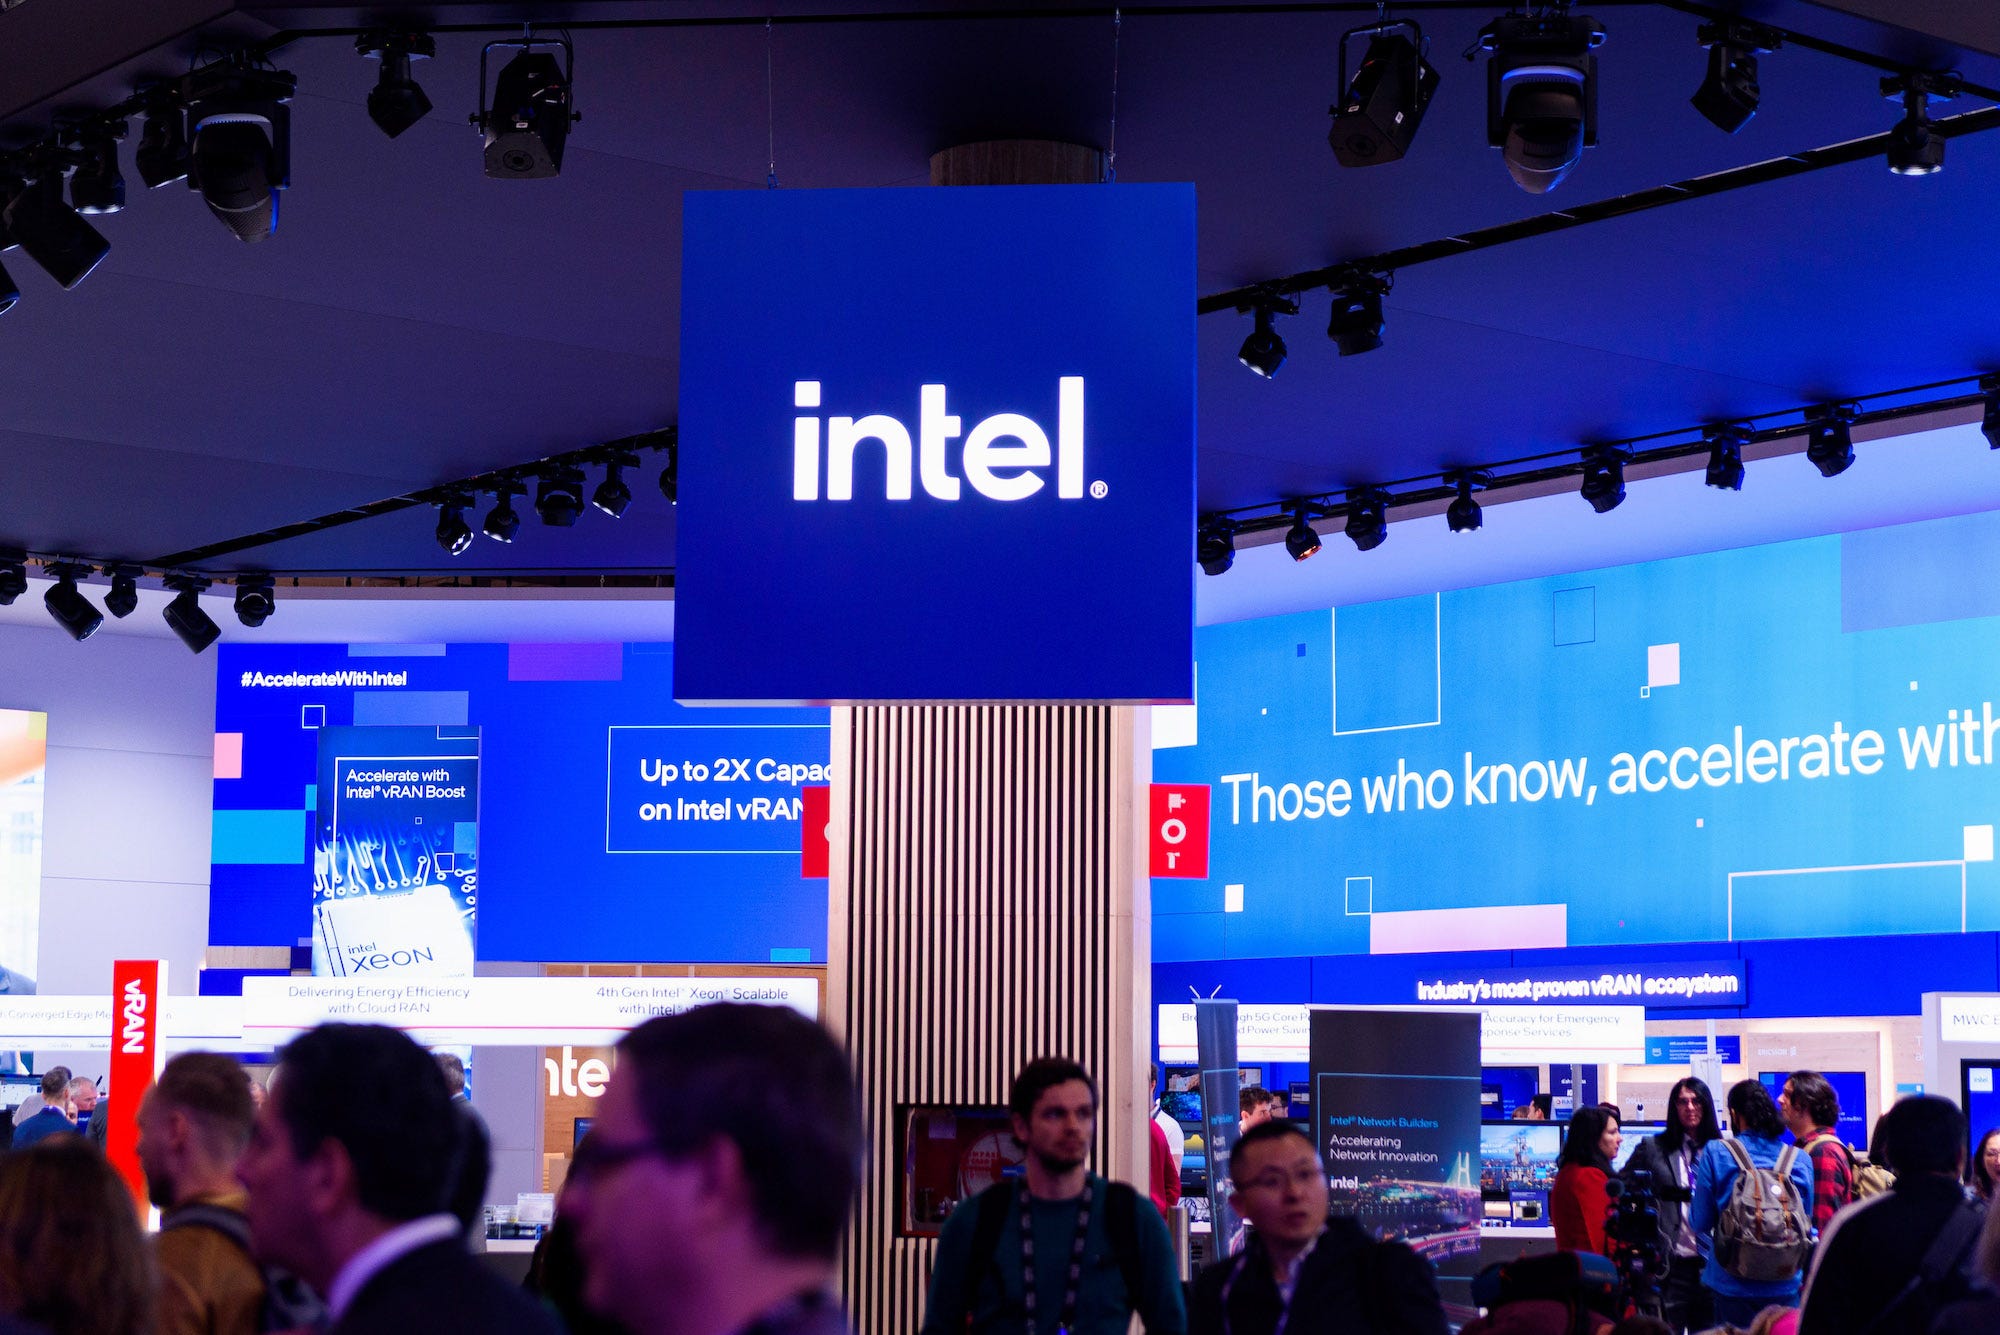 Ein Bild des Intel-Logos in Blau.